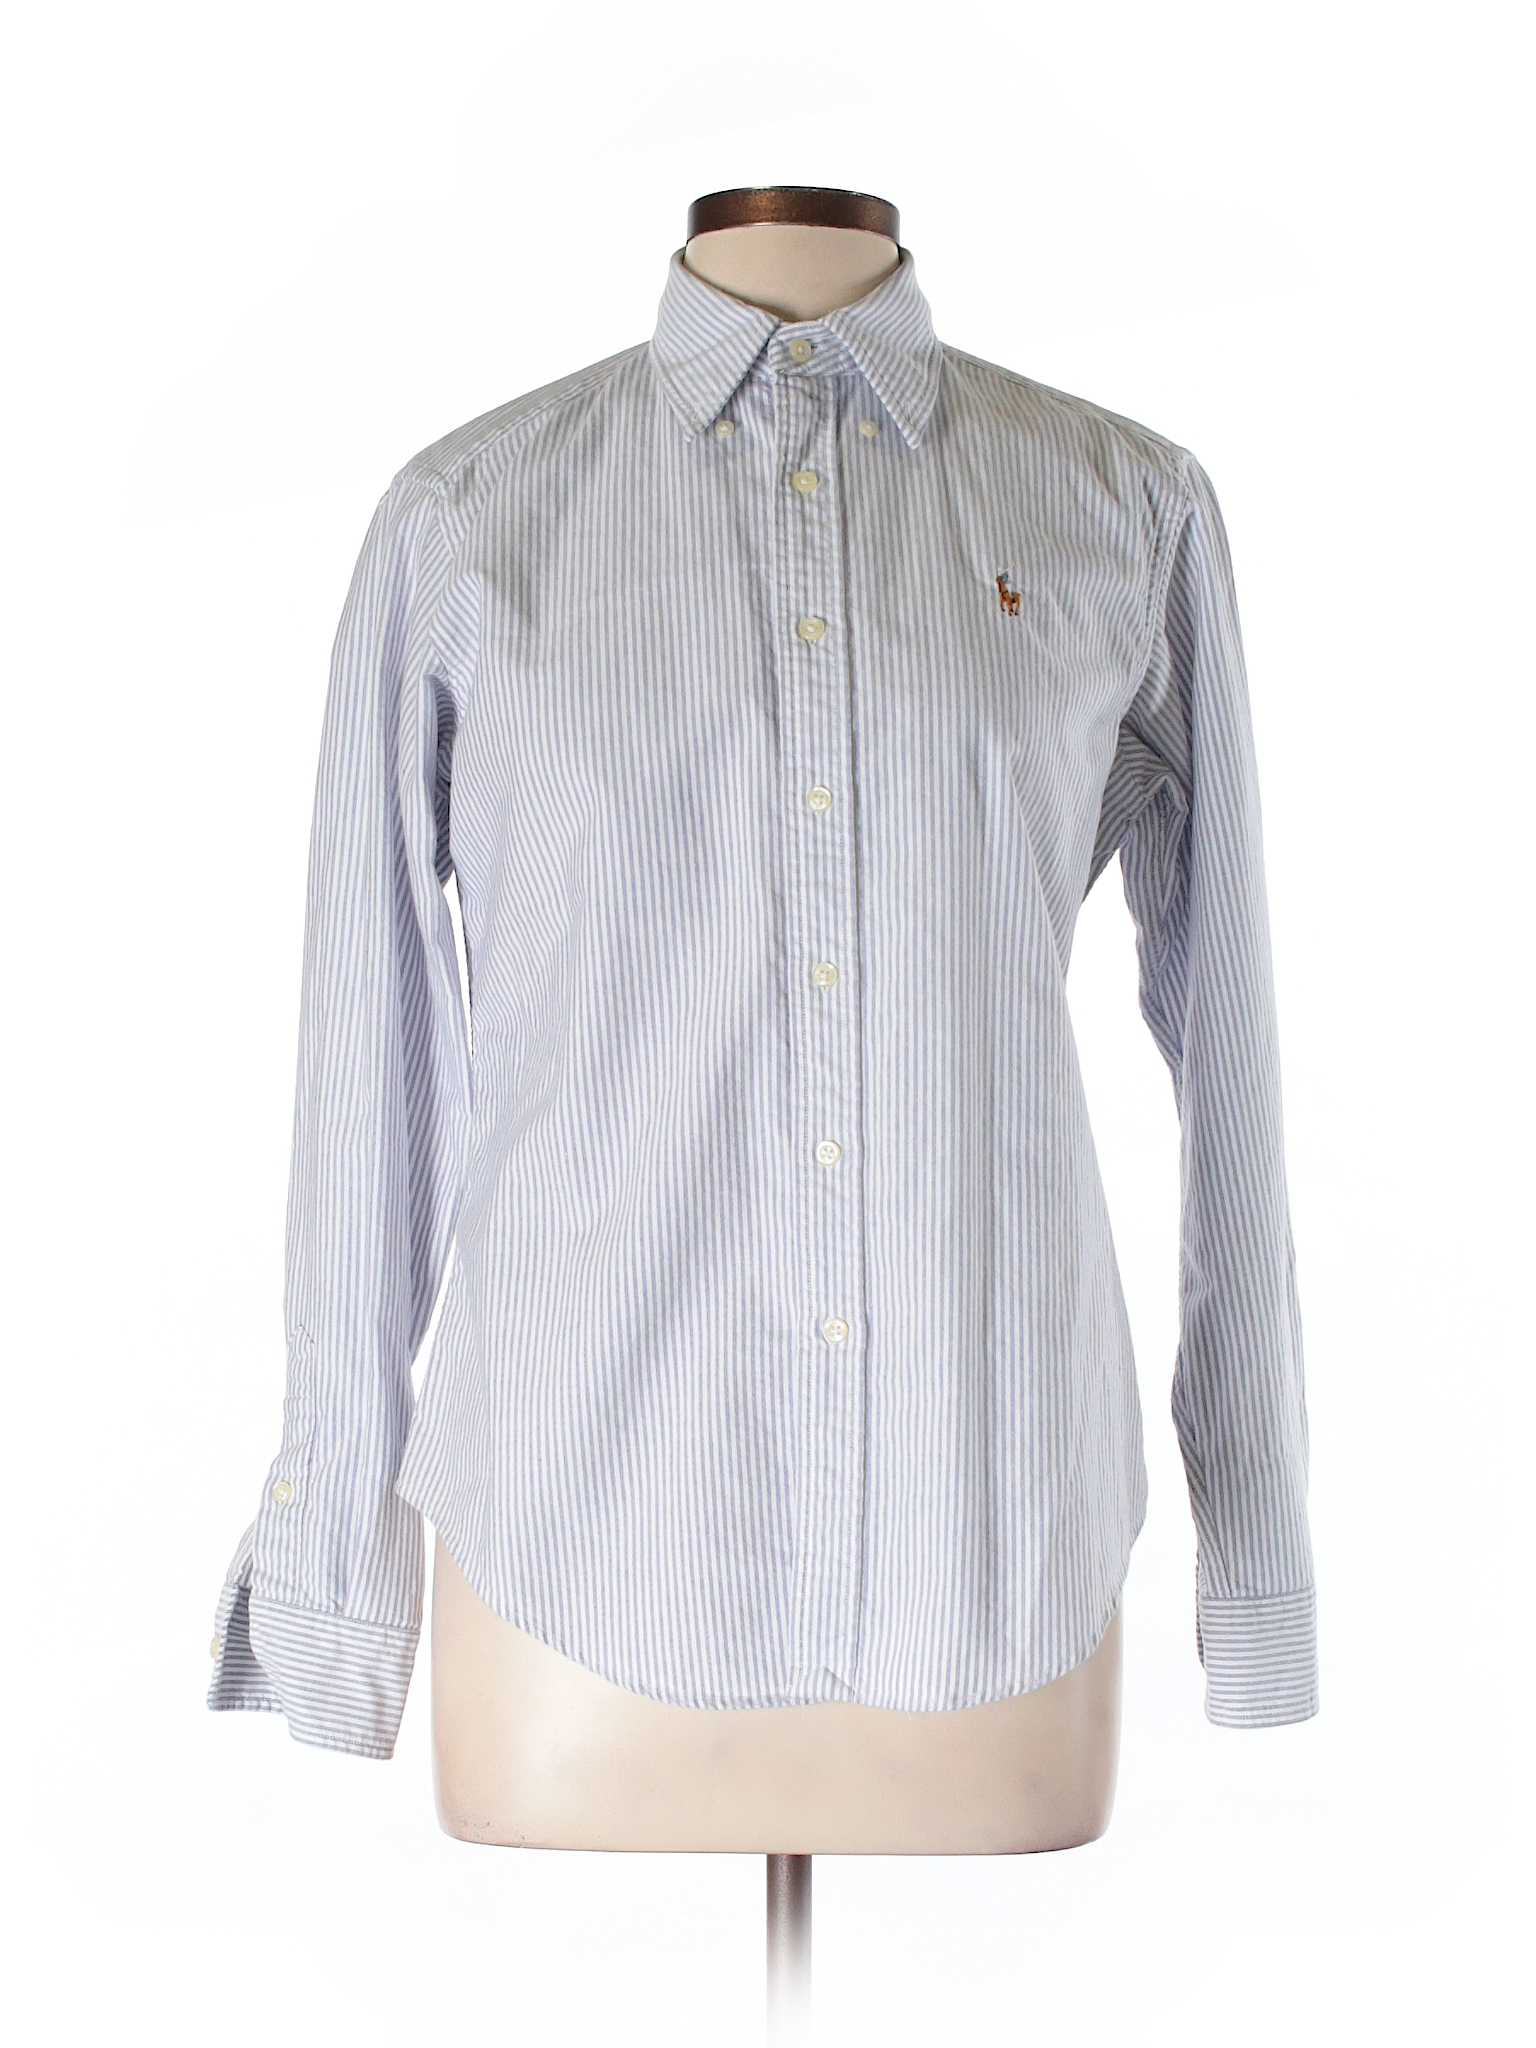 Ralph Lauren Sport 100% Cotton Stripes Blue Long Sleeve Button-Down ...